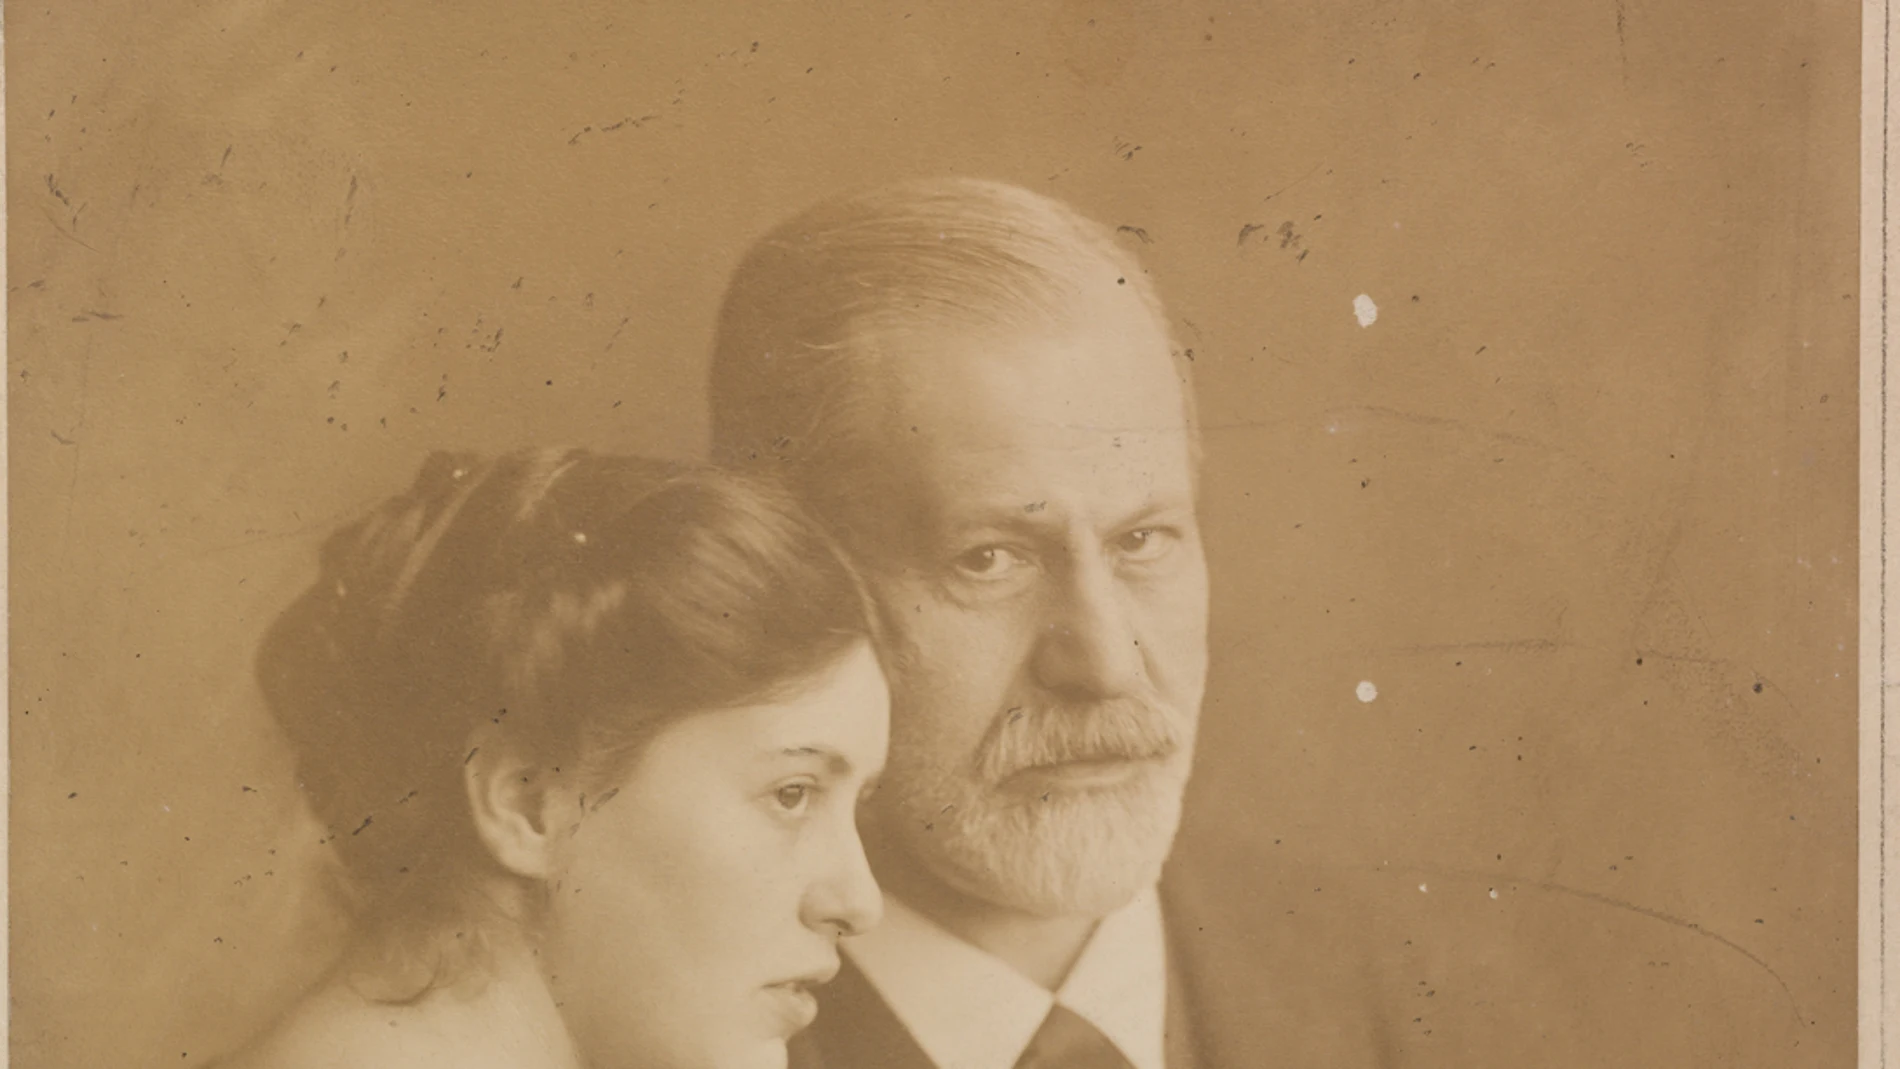 Sophie con su padre,Sigmund Freud, en una fotografía tomada en 1917